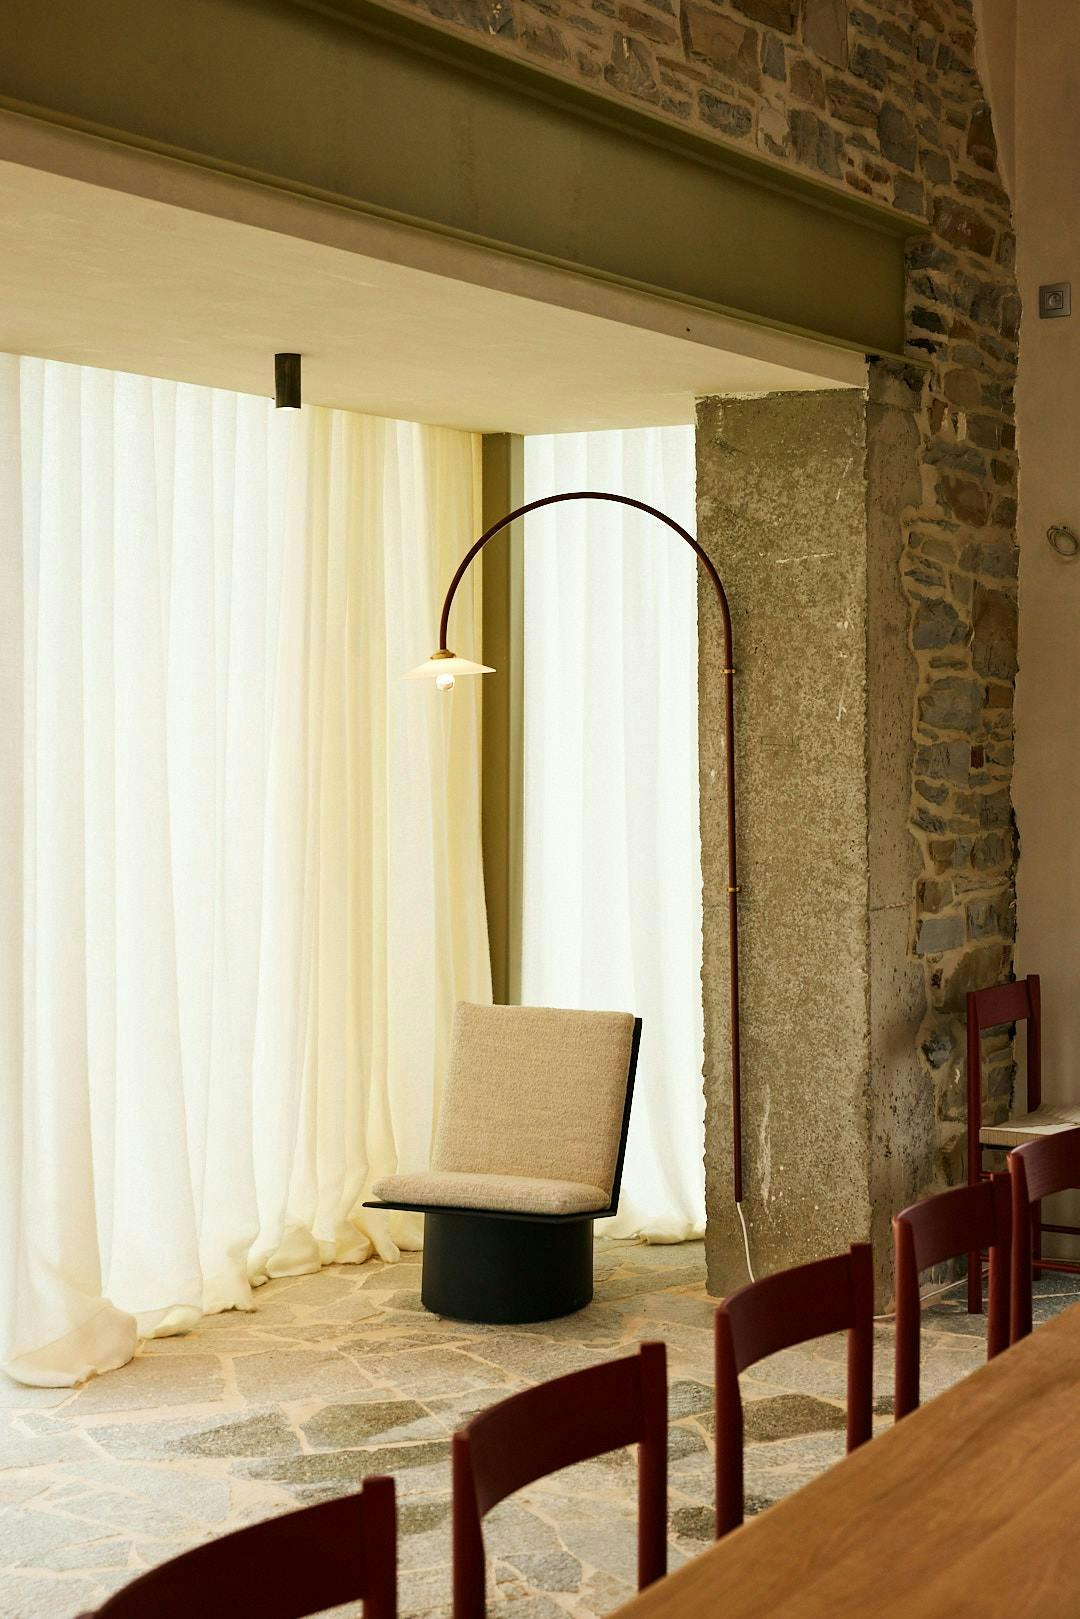 lamp chair furniture indoors interior design